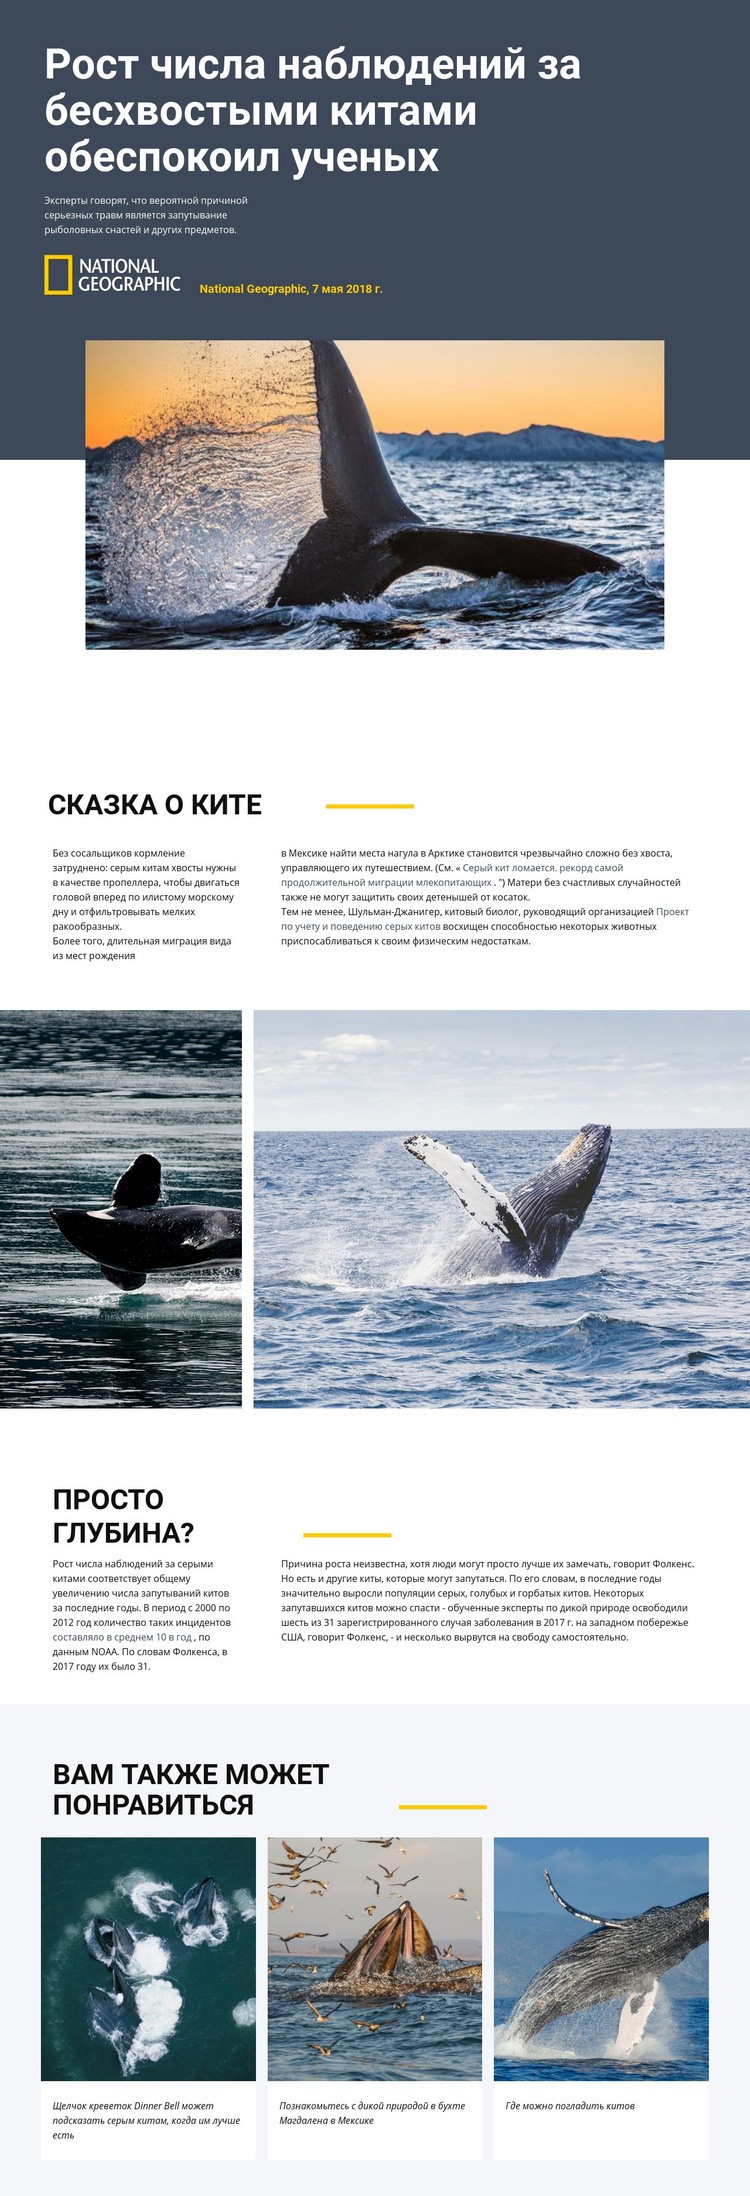 Центр наблюдения за китами Шаблон